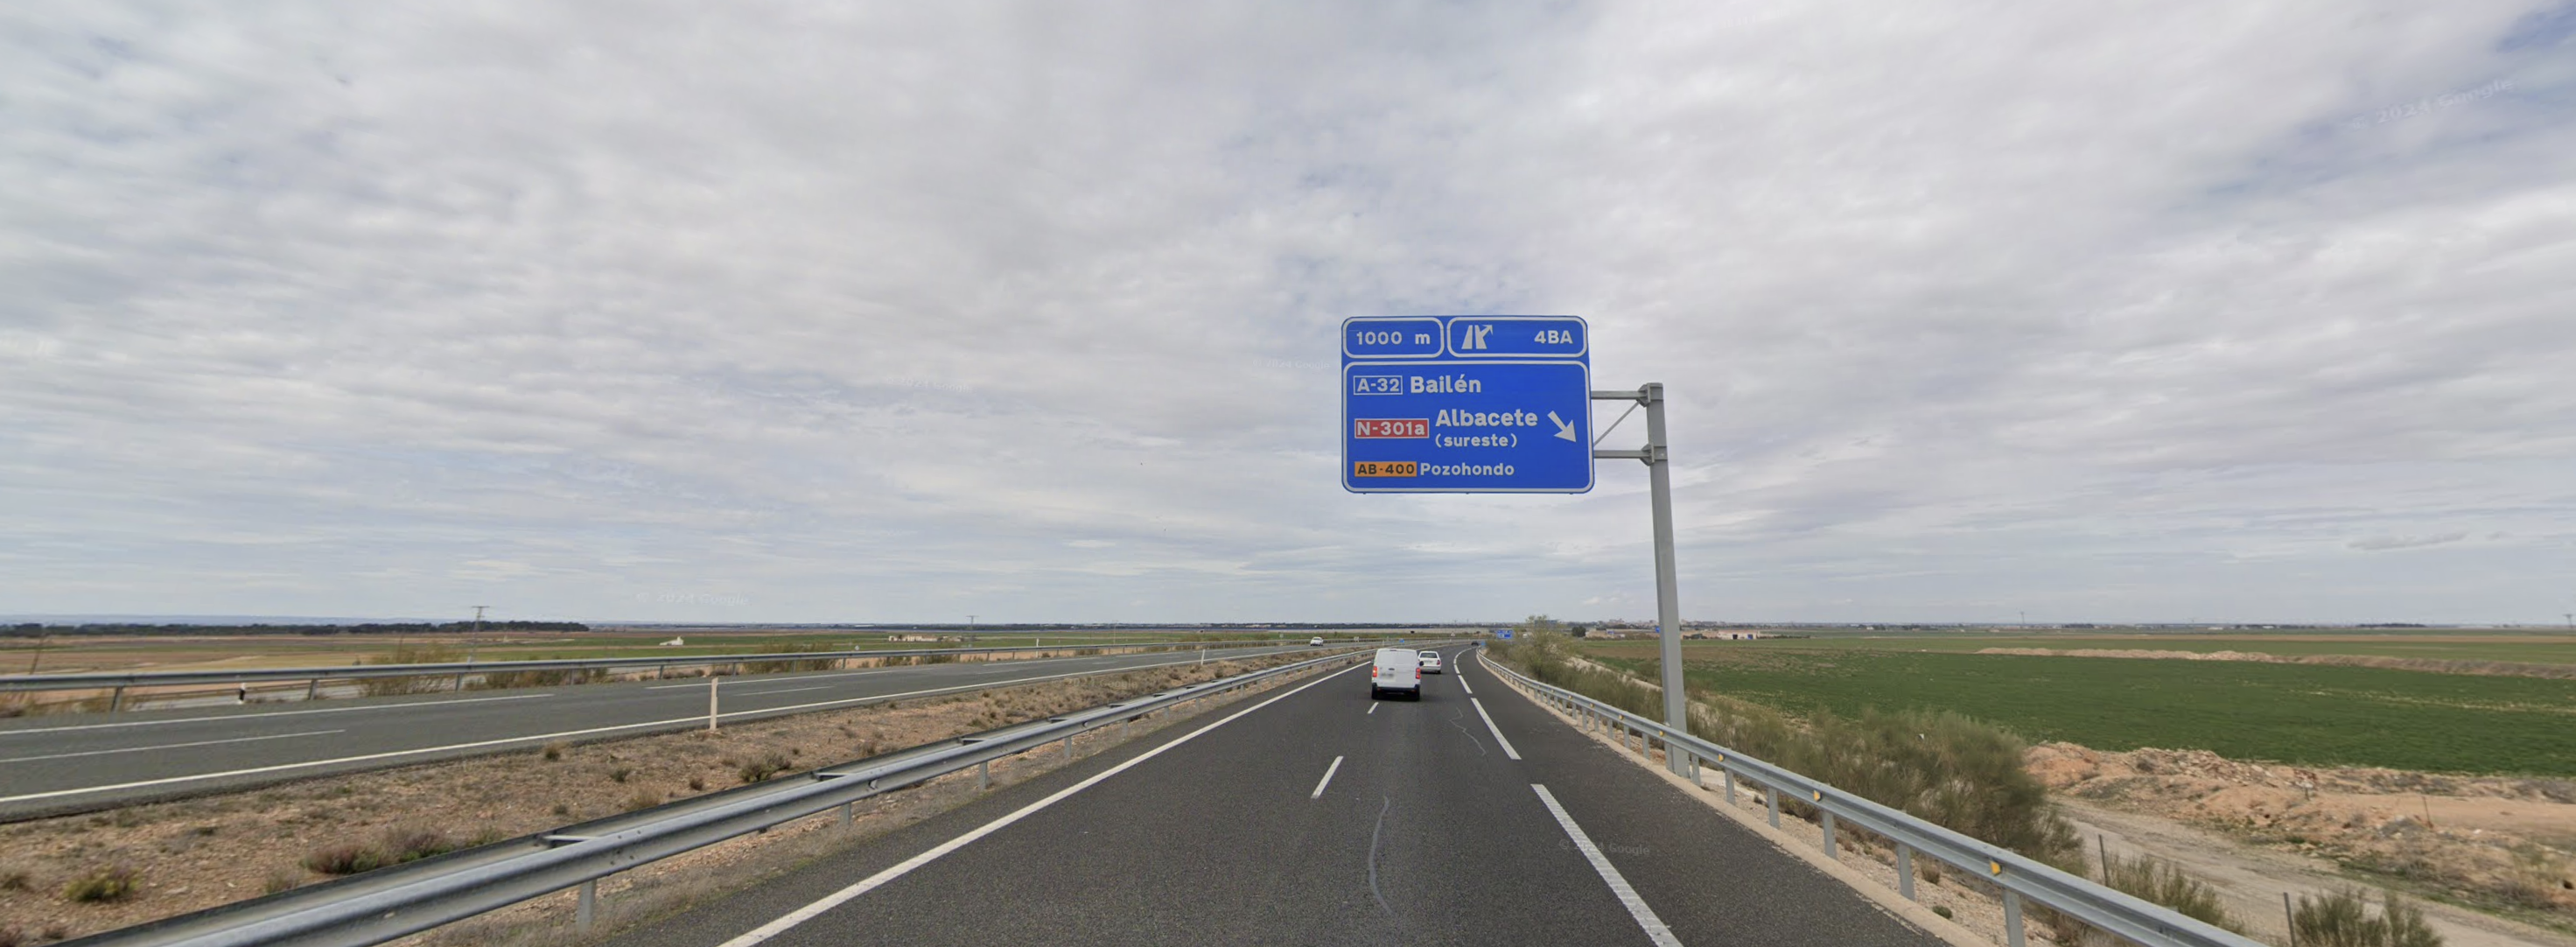 carretera N301 Albacete